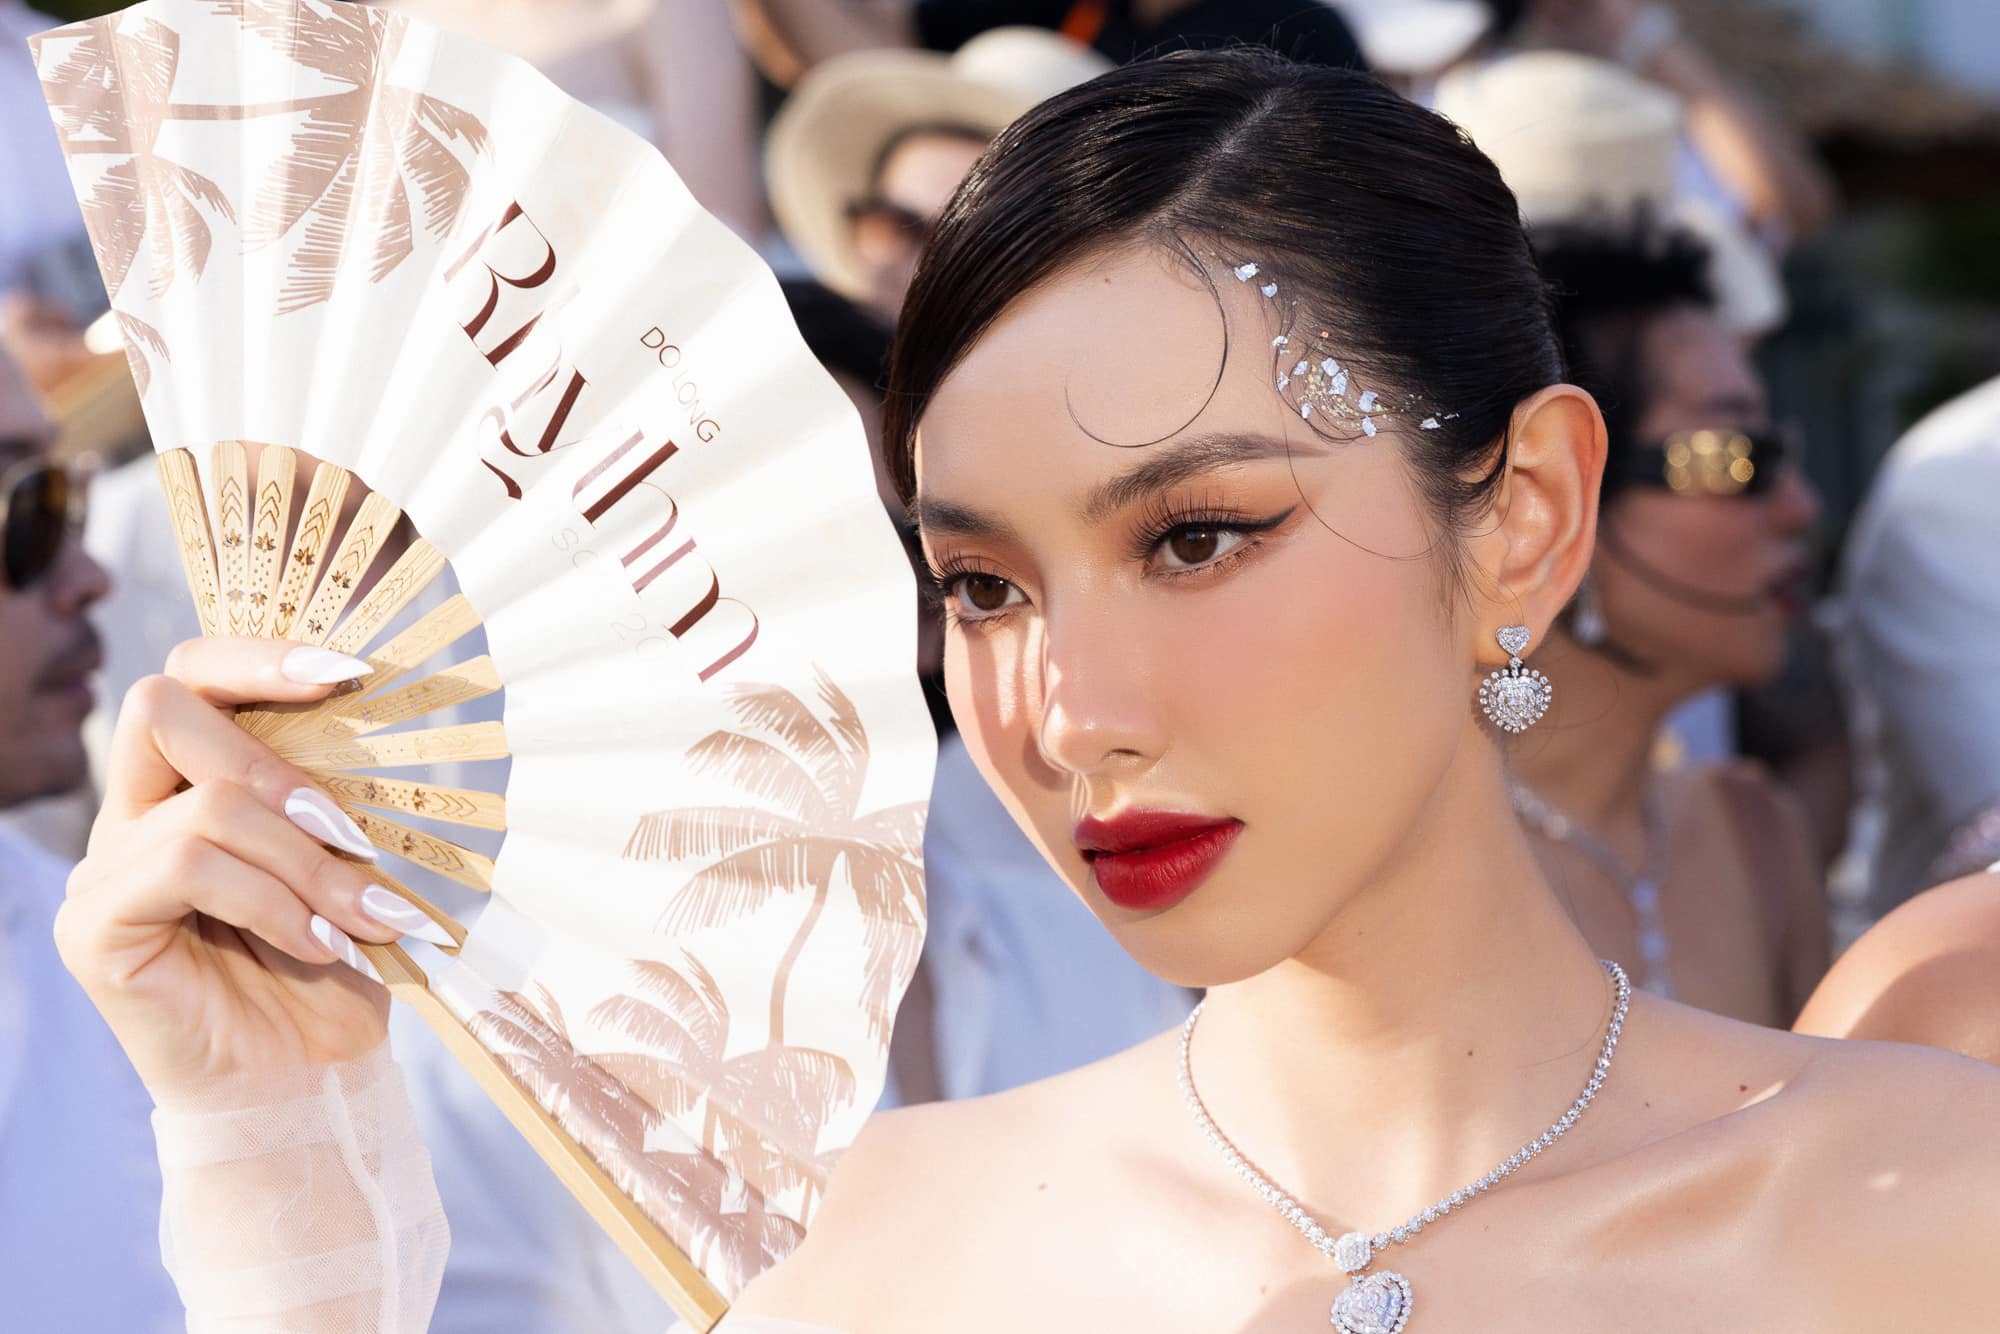 Hoa hậu Hòa Bình Thế Giới 2021 – Nguyễn Thúc Thùy Tiên nổi bật trong show diễn của NTK Đỗ Long